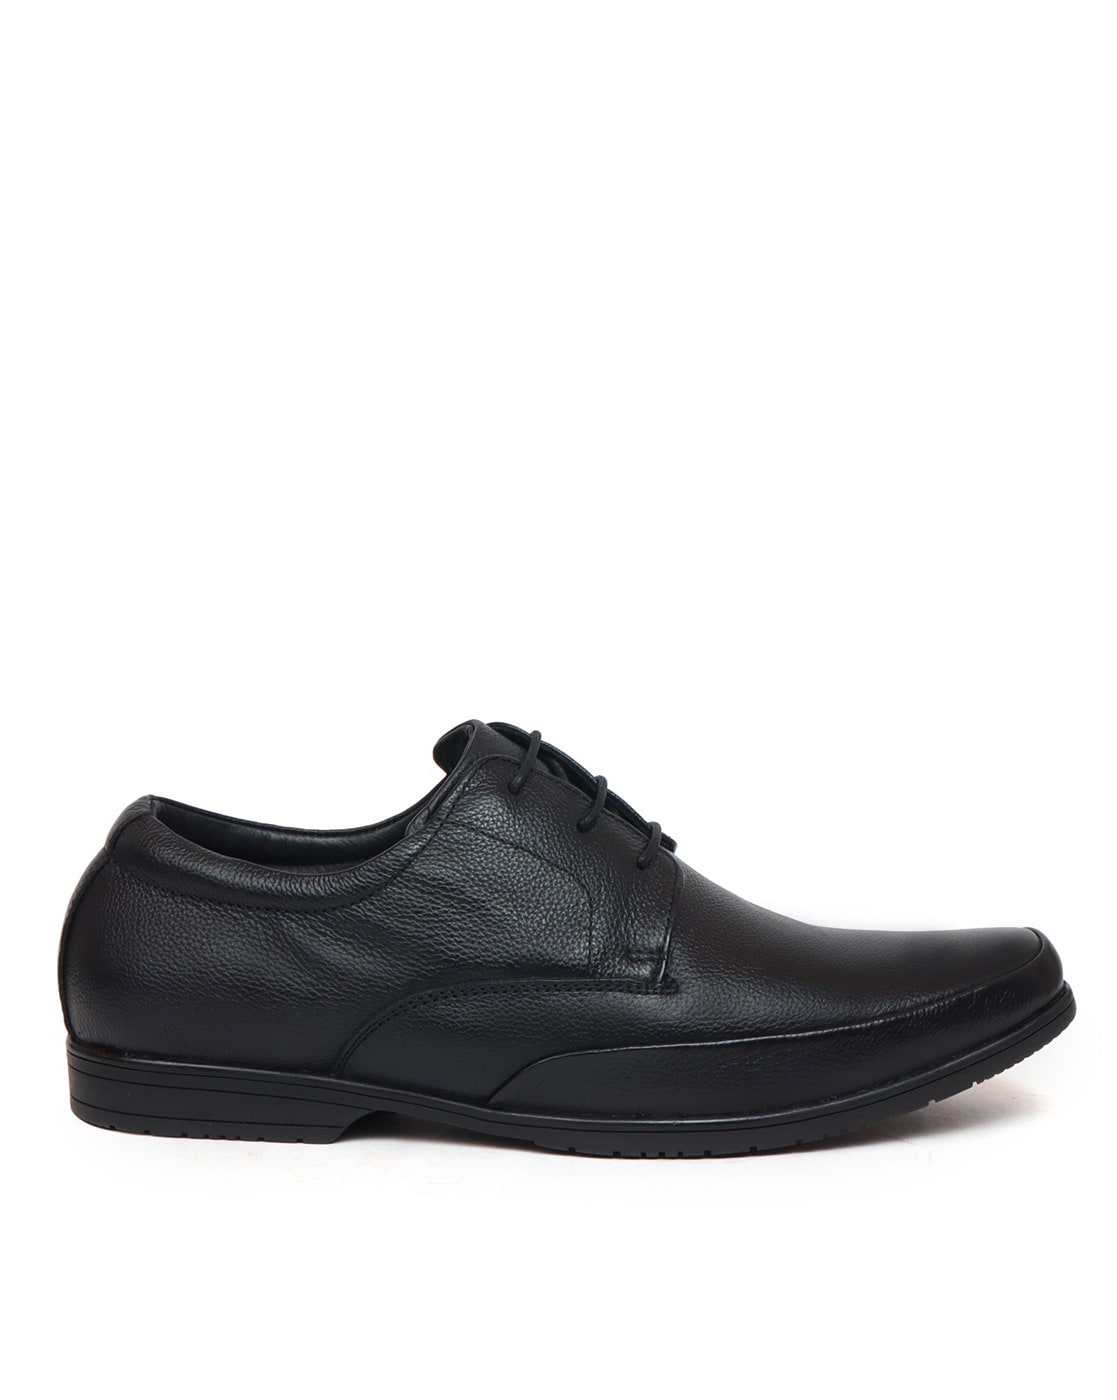 Buy Men Black Formal Shoes Online - 860567 | Van Heusen